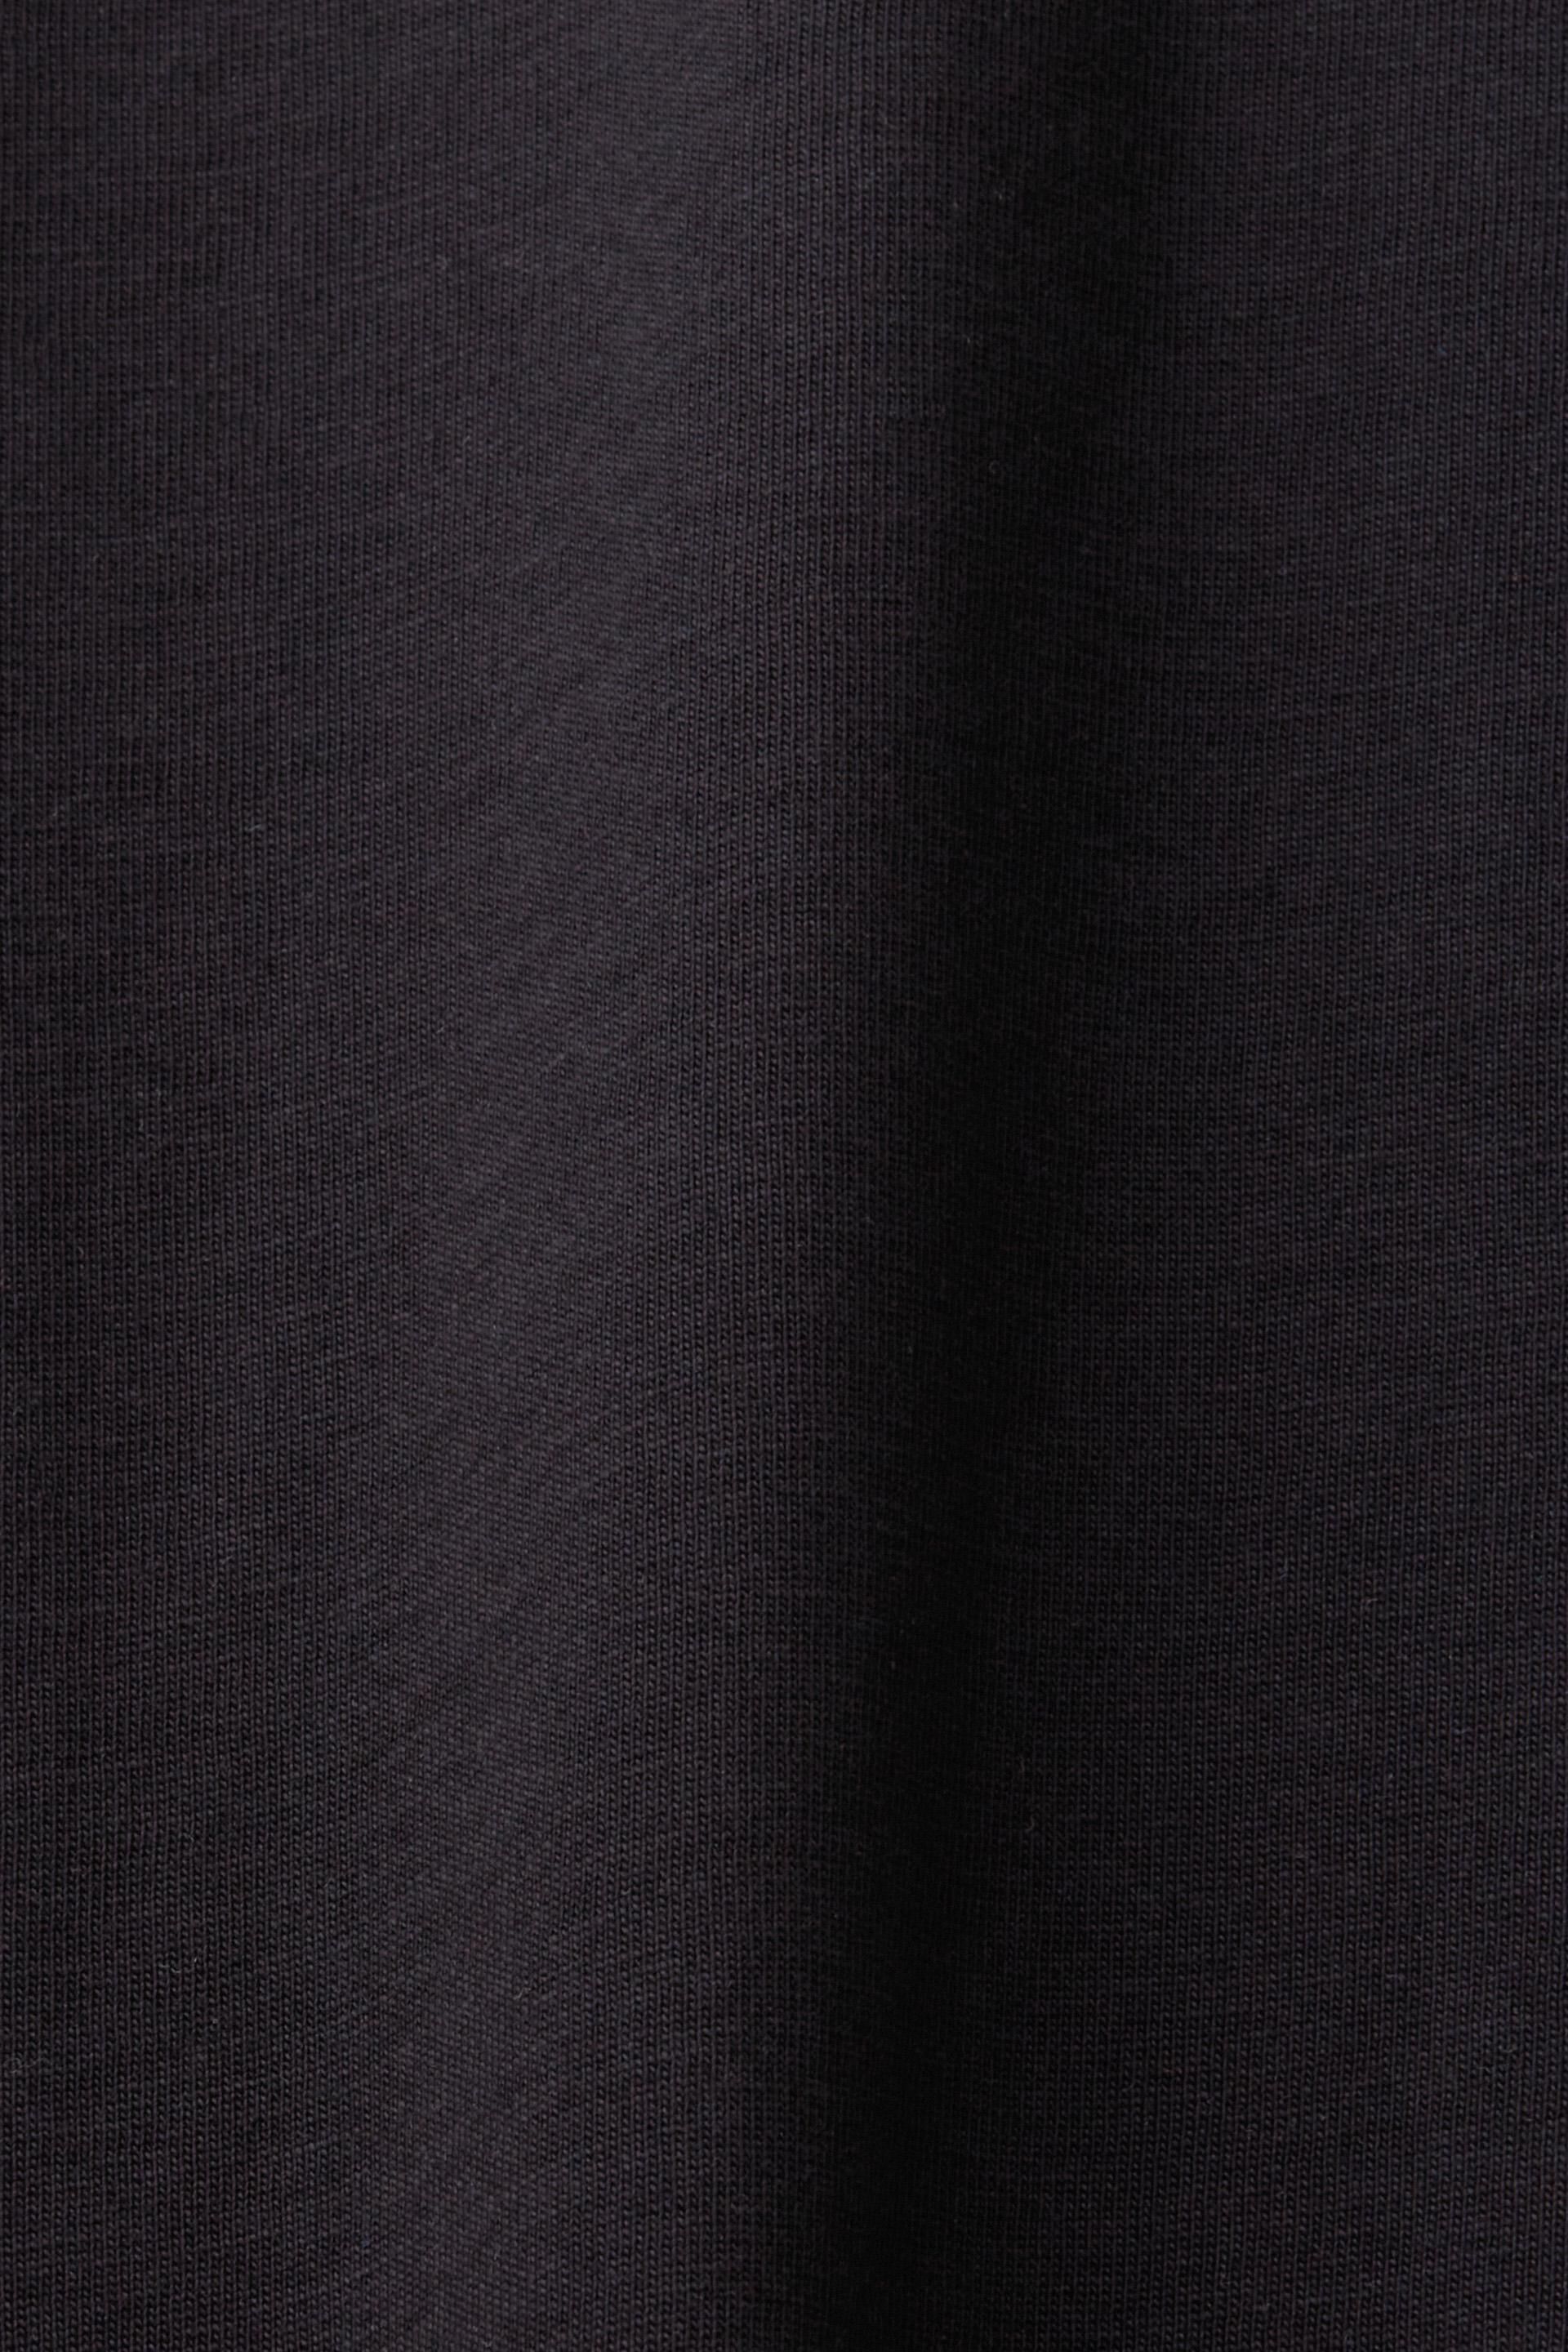 Esprit Baumwolle 100 Jersey-Langarm, %